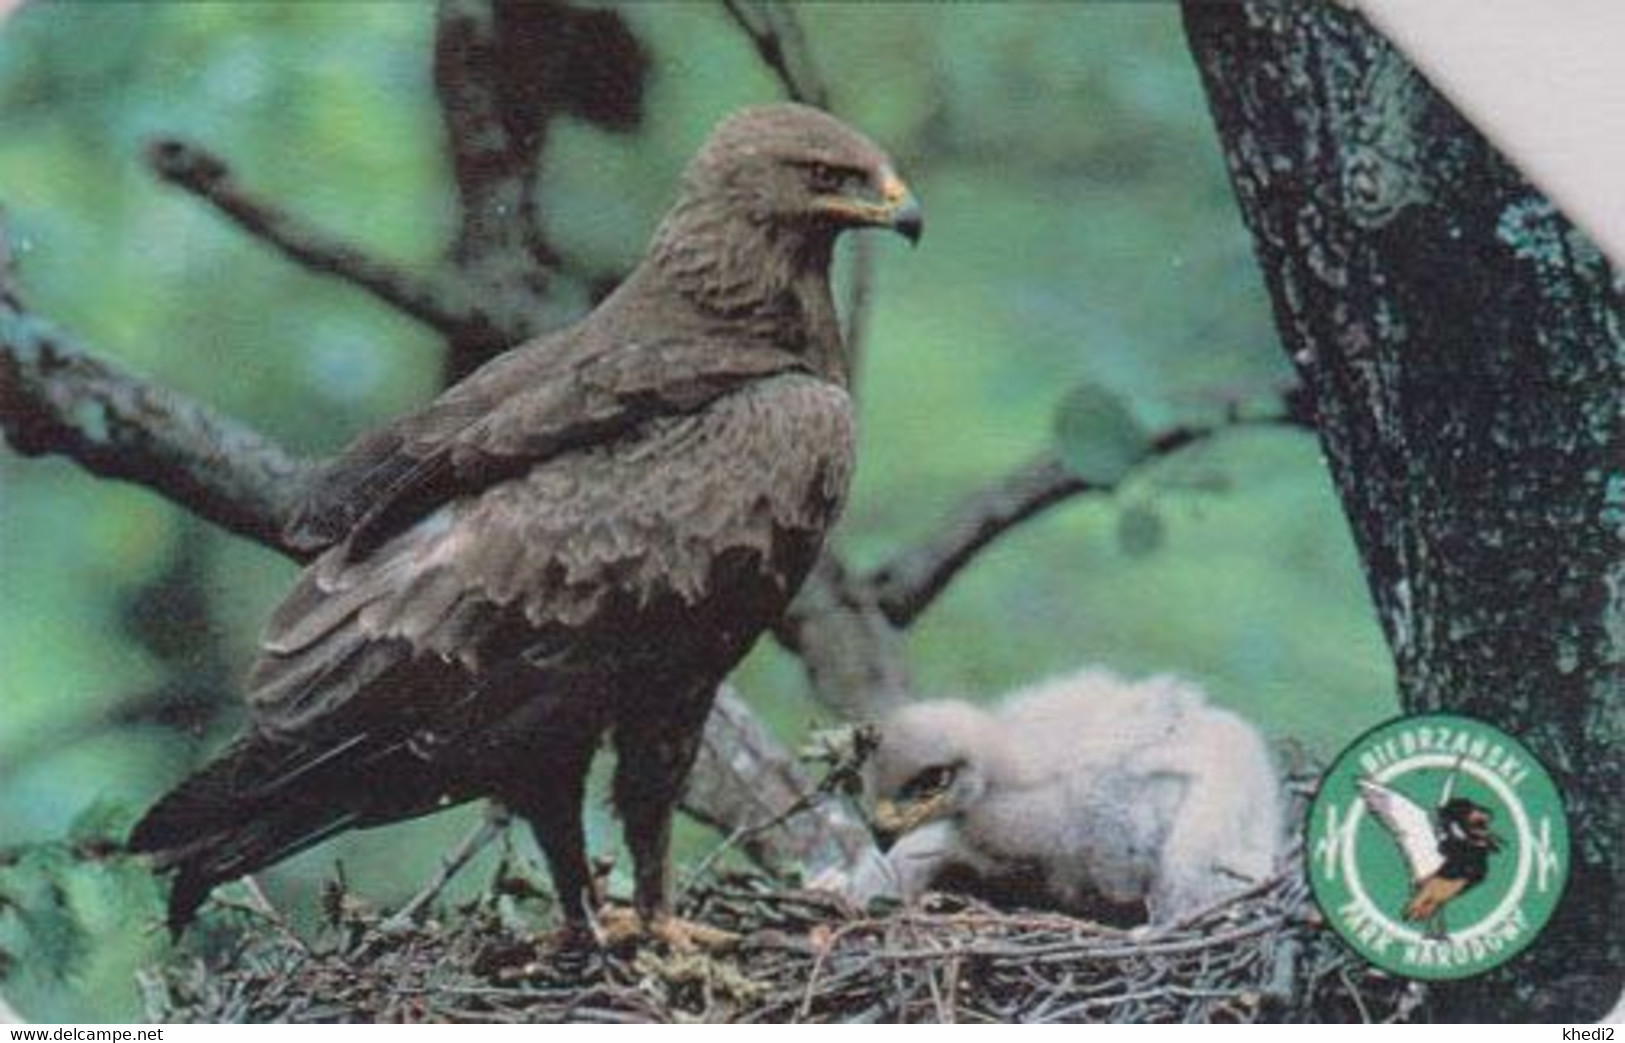 TC POLOGNE - ANIMAL / Série Bierbrzanski Park 4/10 - OISEAU AIGLE POMARIN Au Nid - EAGLE BIRD POLAND Phonecard - BE 5525 - Arenden & Roofvogels